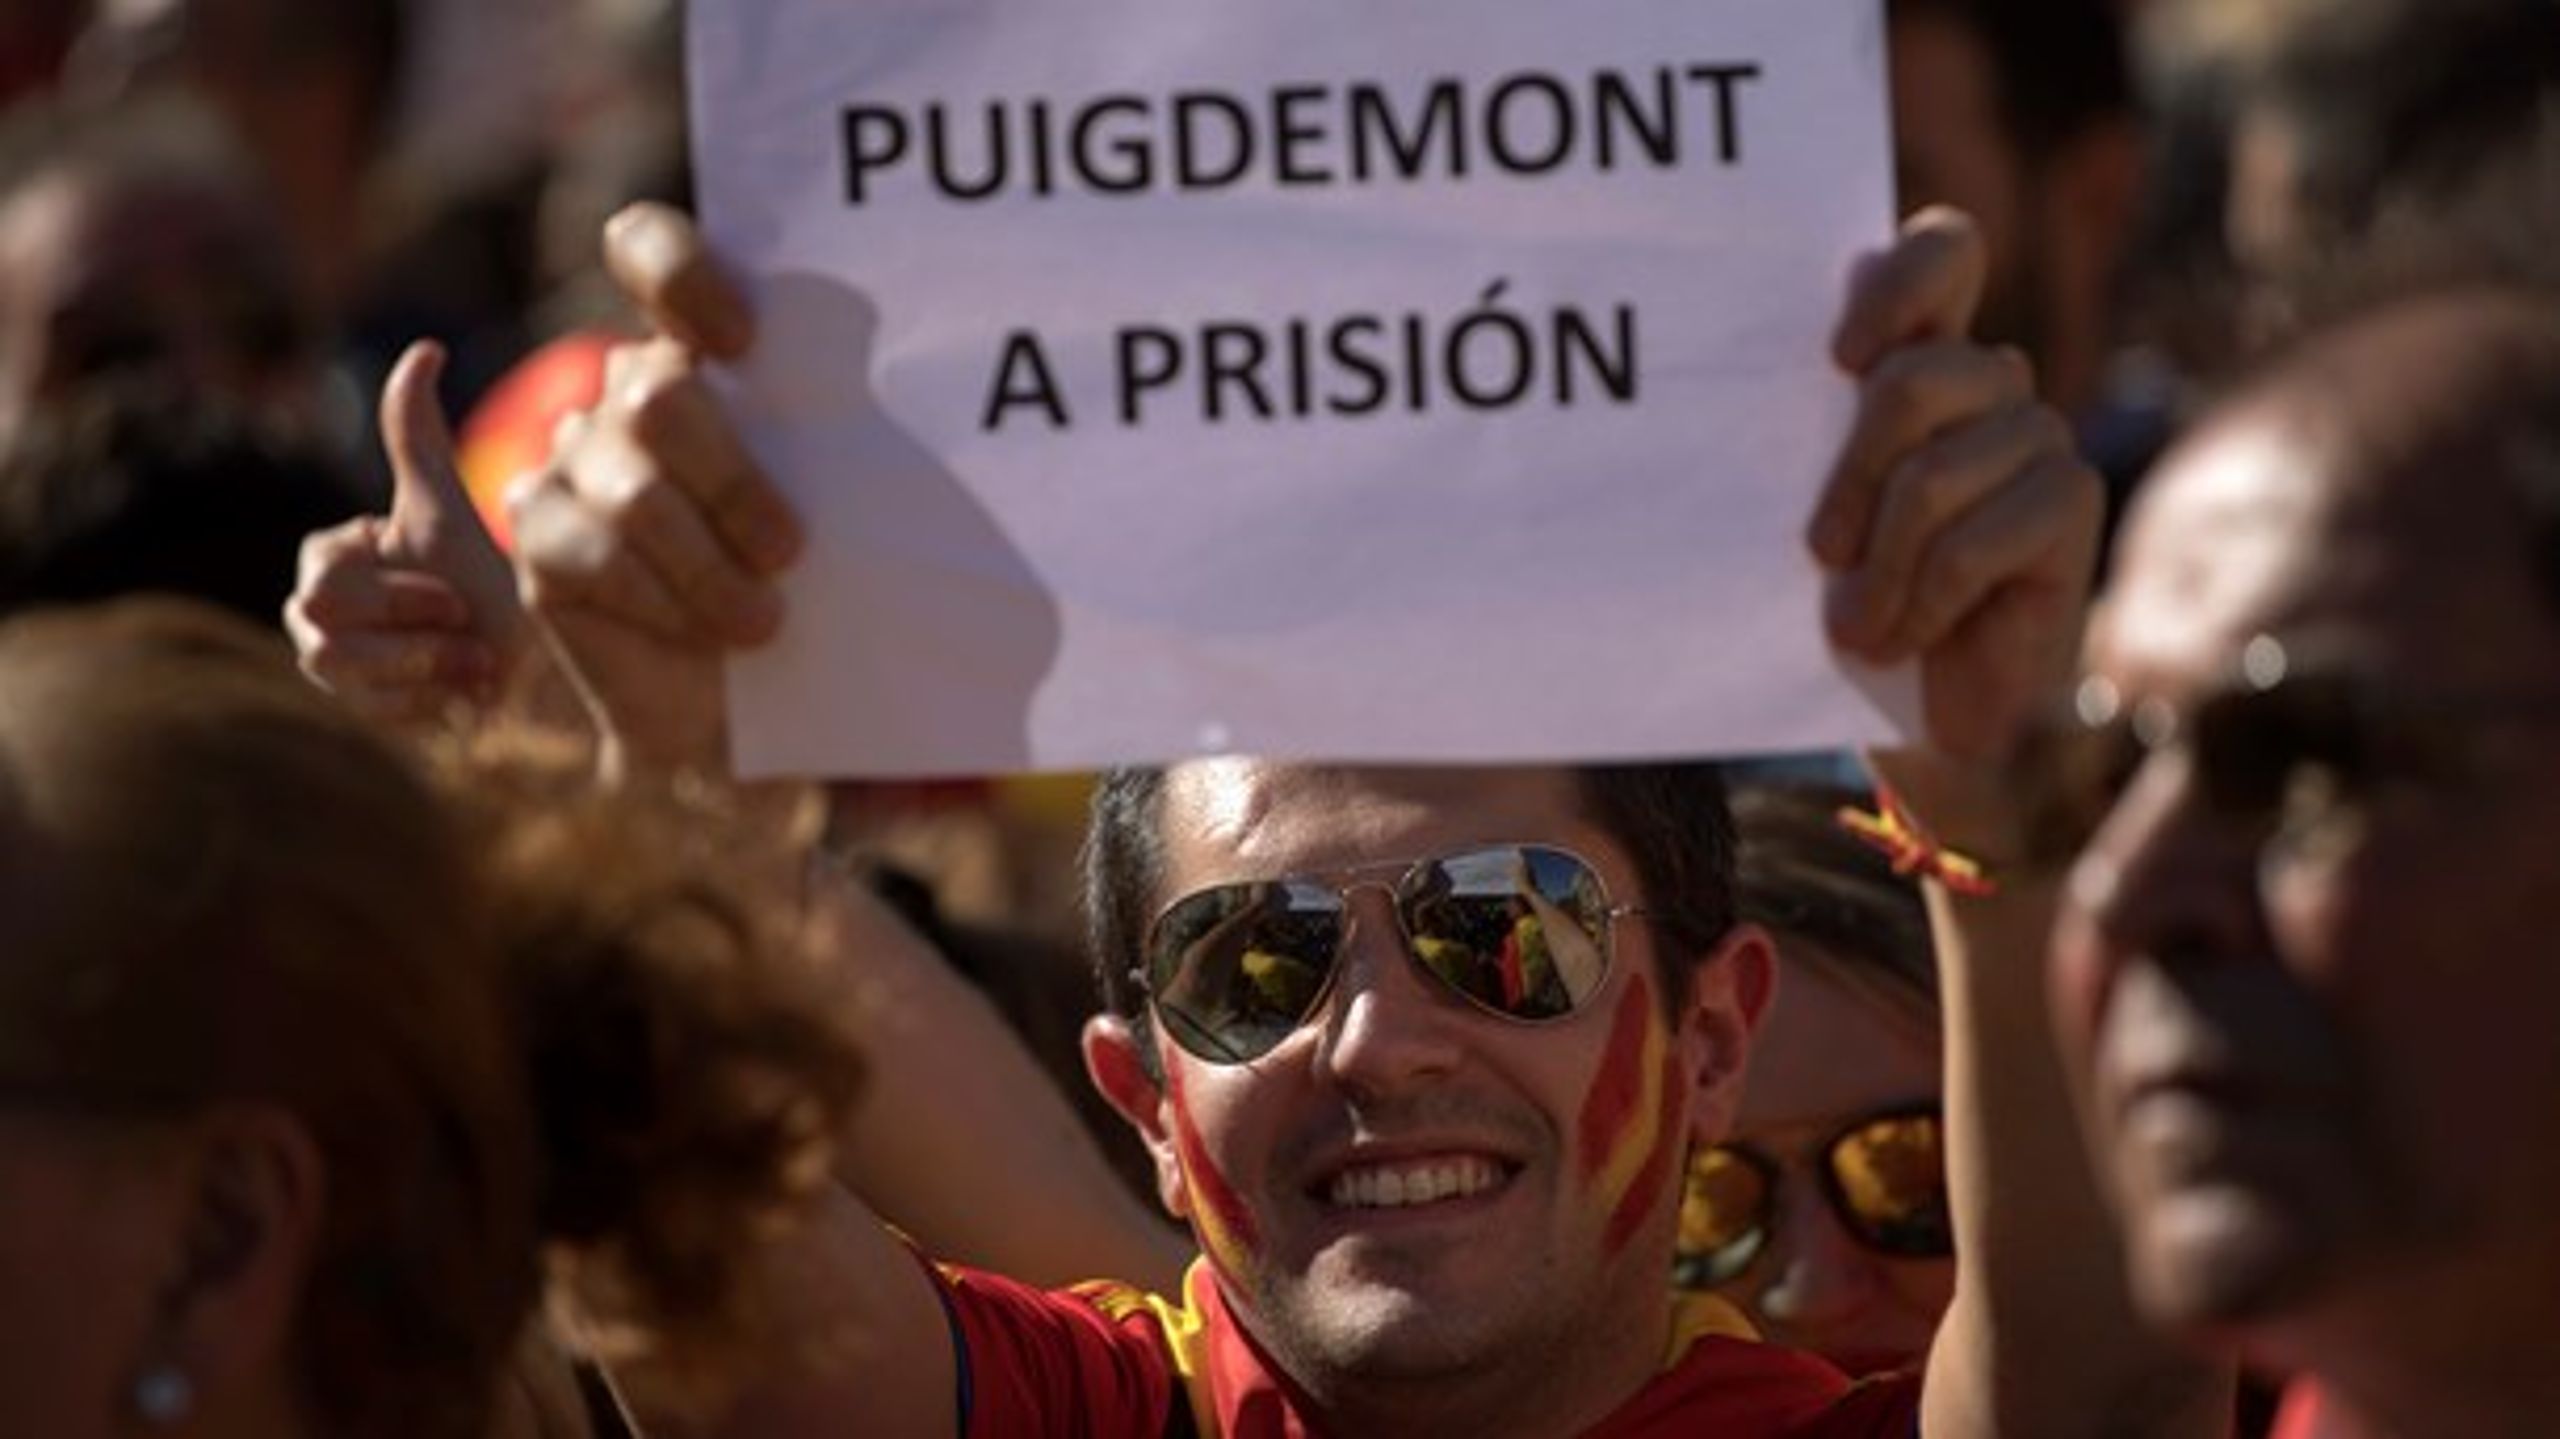 En deltager ved søndagens demonstration i Barcelona&nbsp;mod løsrivelse af Catalonien ved godt, hvor han synes, den nu afsatte præsident for den catalonske regering, Carles Puigdemont, skal hen.